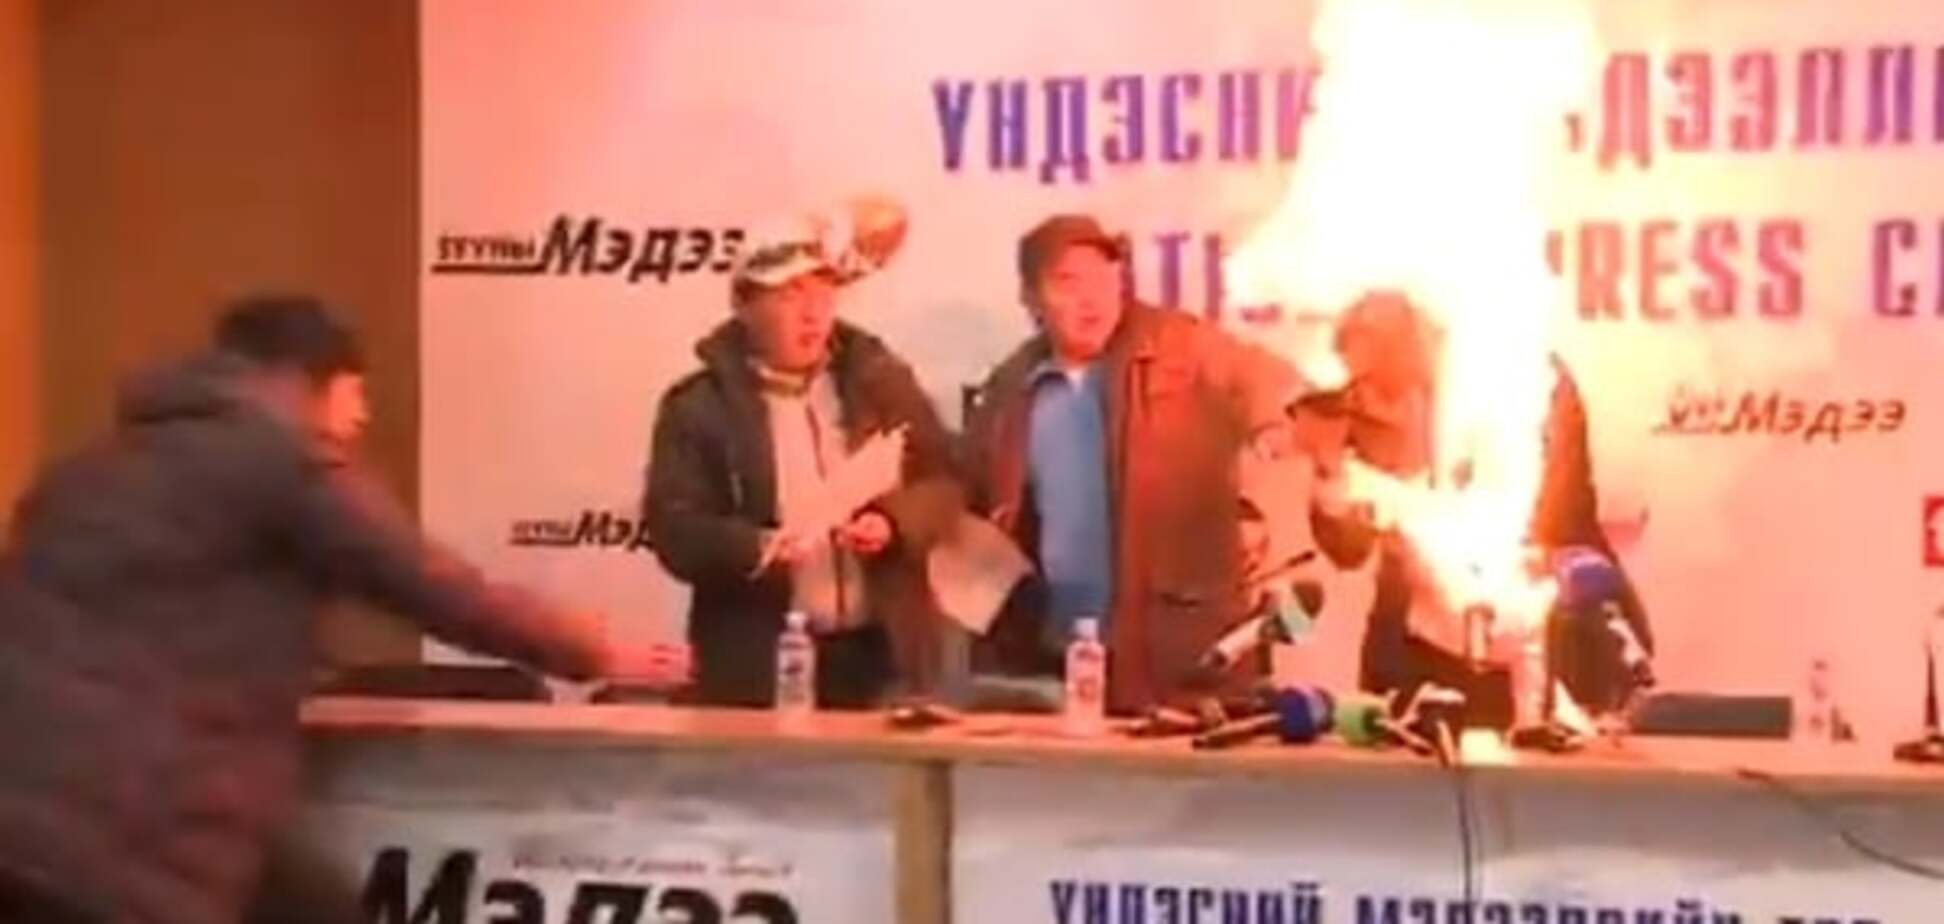 У Монголії глава профспілки облив себе бензином і підпалив: відео 18+